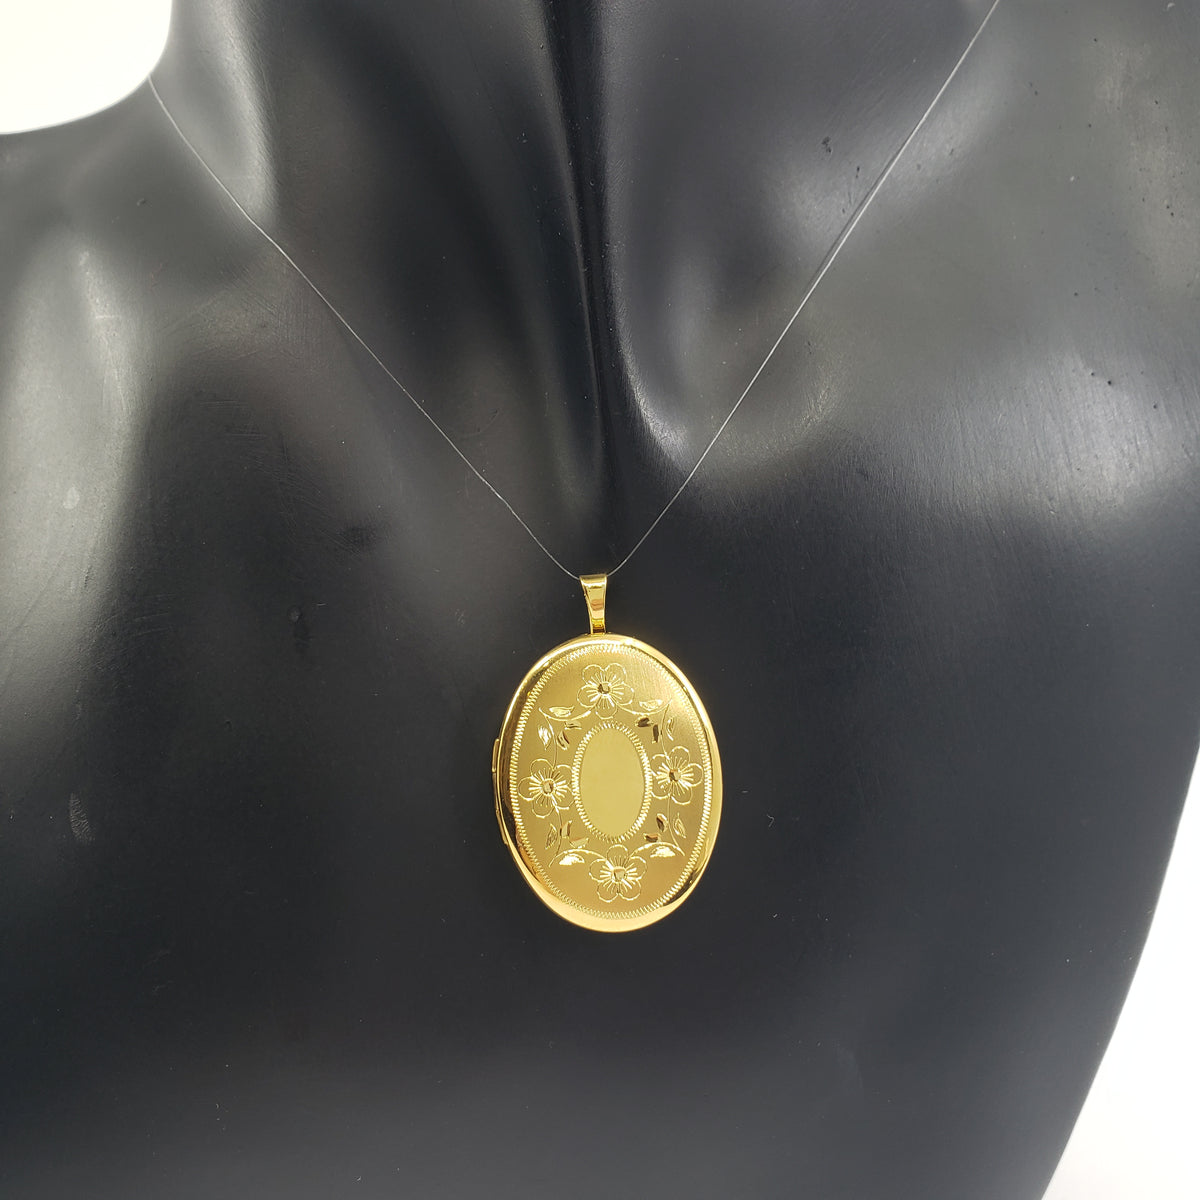 Medallón ovalado de plata de ley 925 chapado en oro con diseño floral grabado - 26 mm x 21 mm